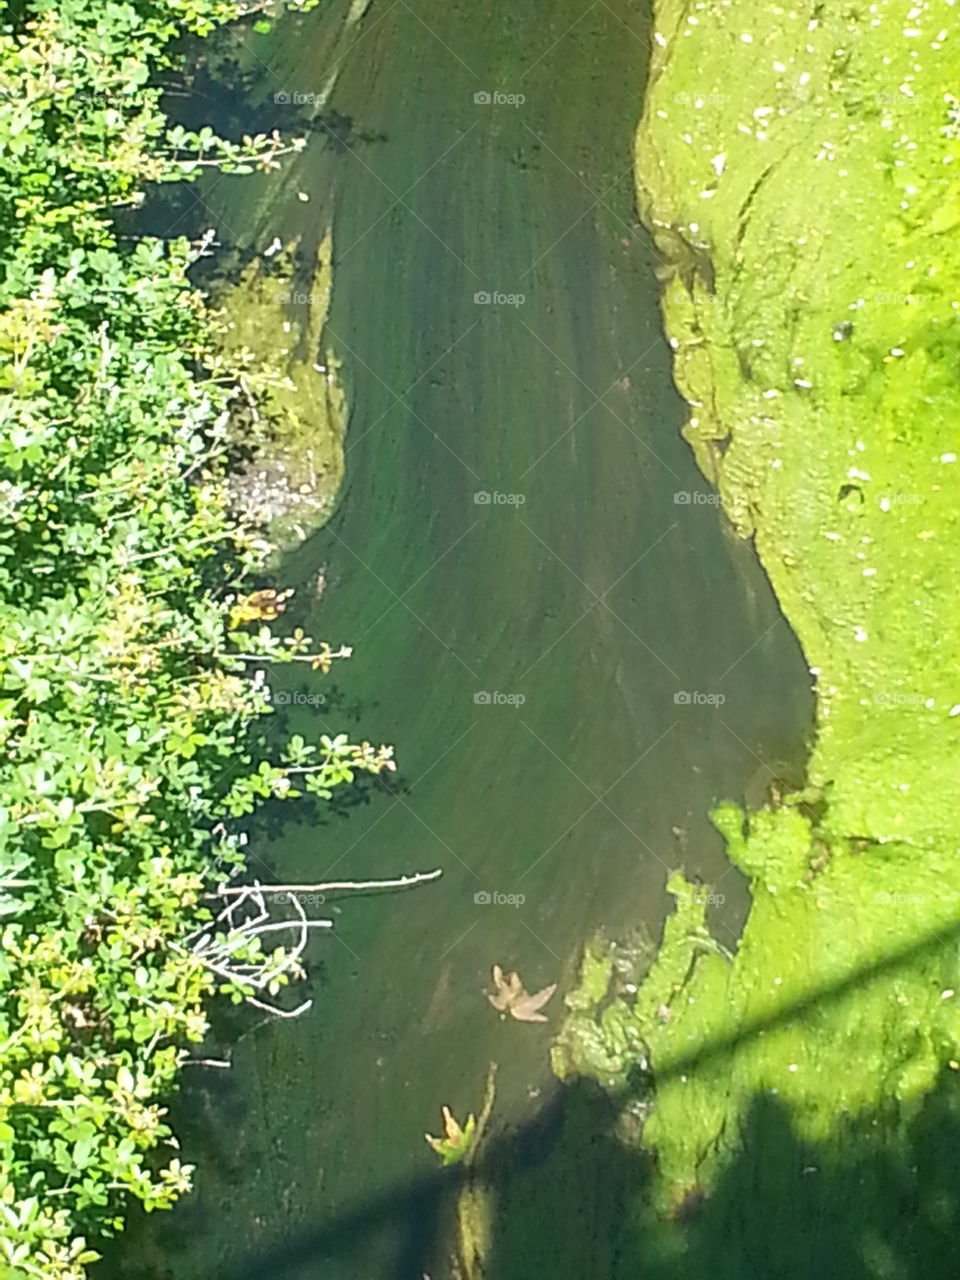 algae in the river